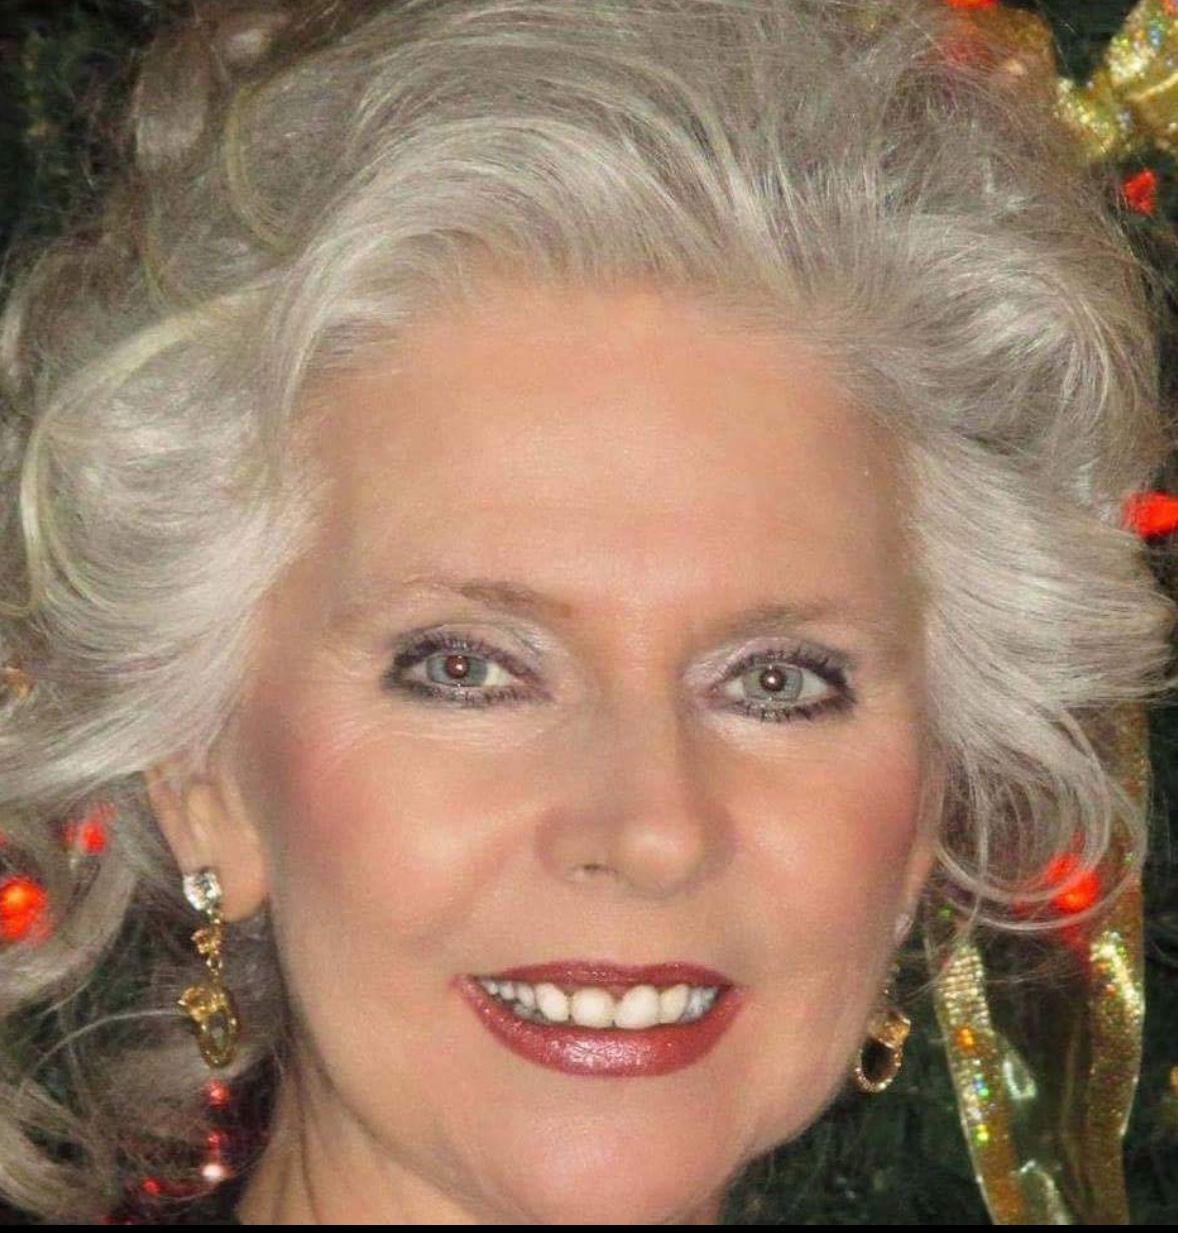 Une femme aux cheveux gris souriant devant un sapin de Noël, représentant la joie du temps des fêtes.